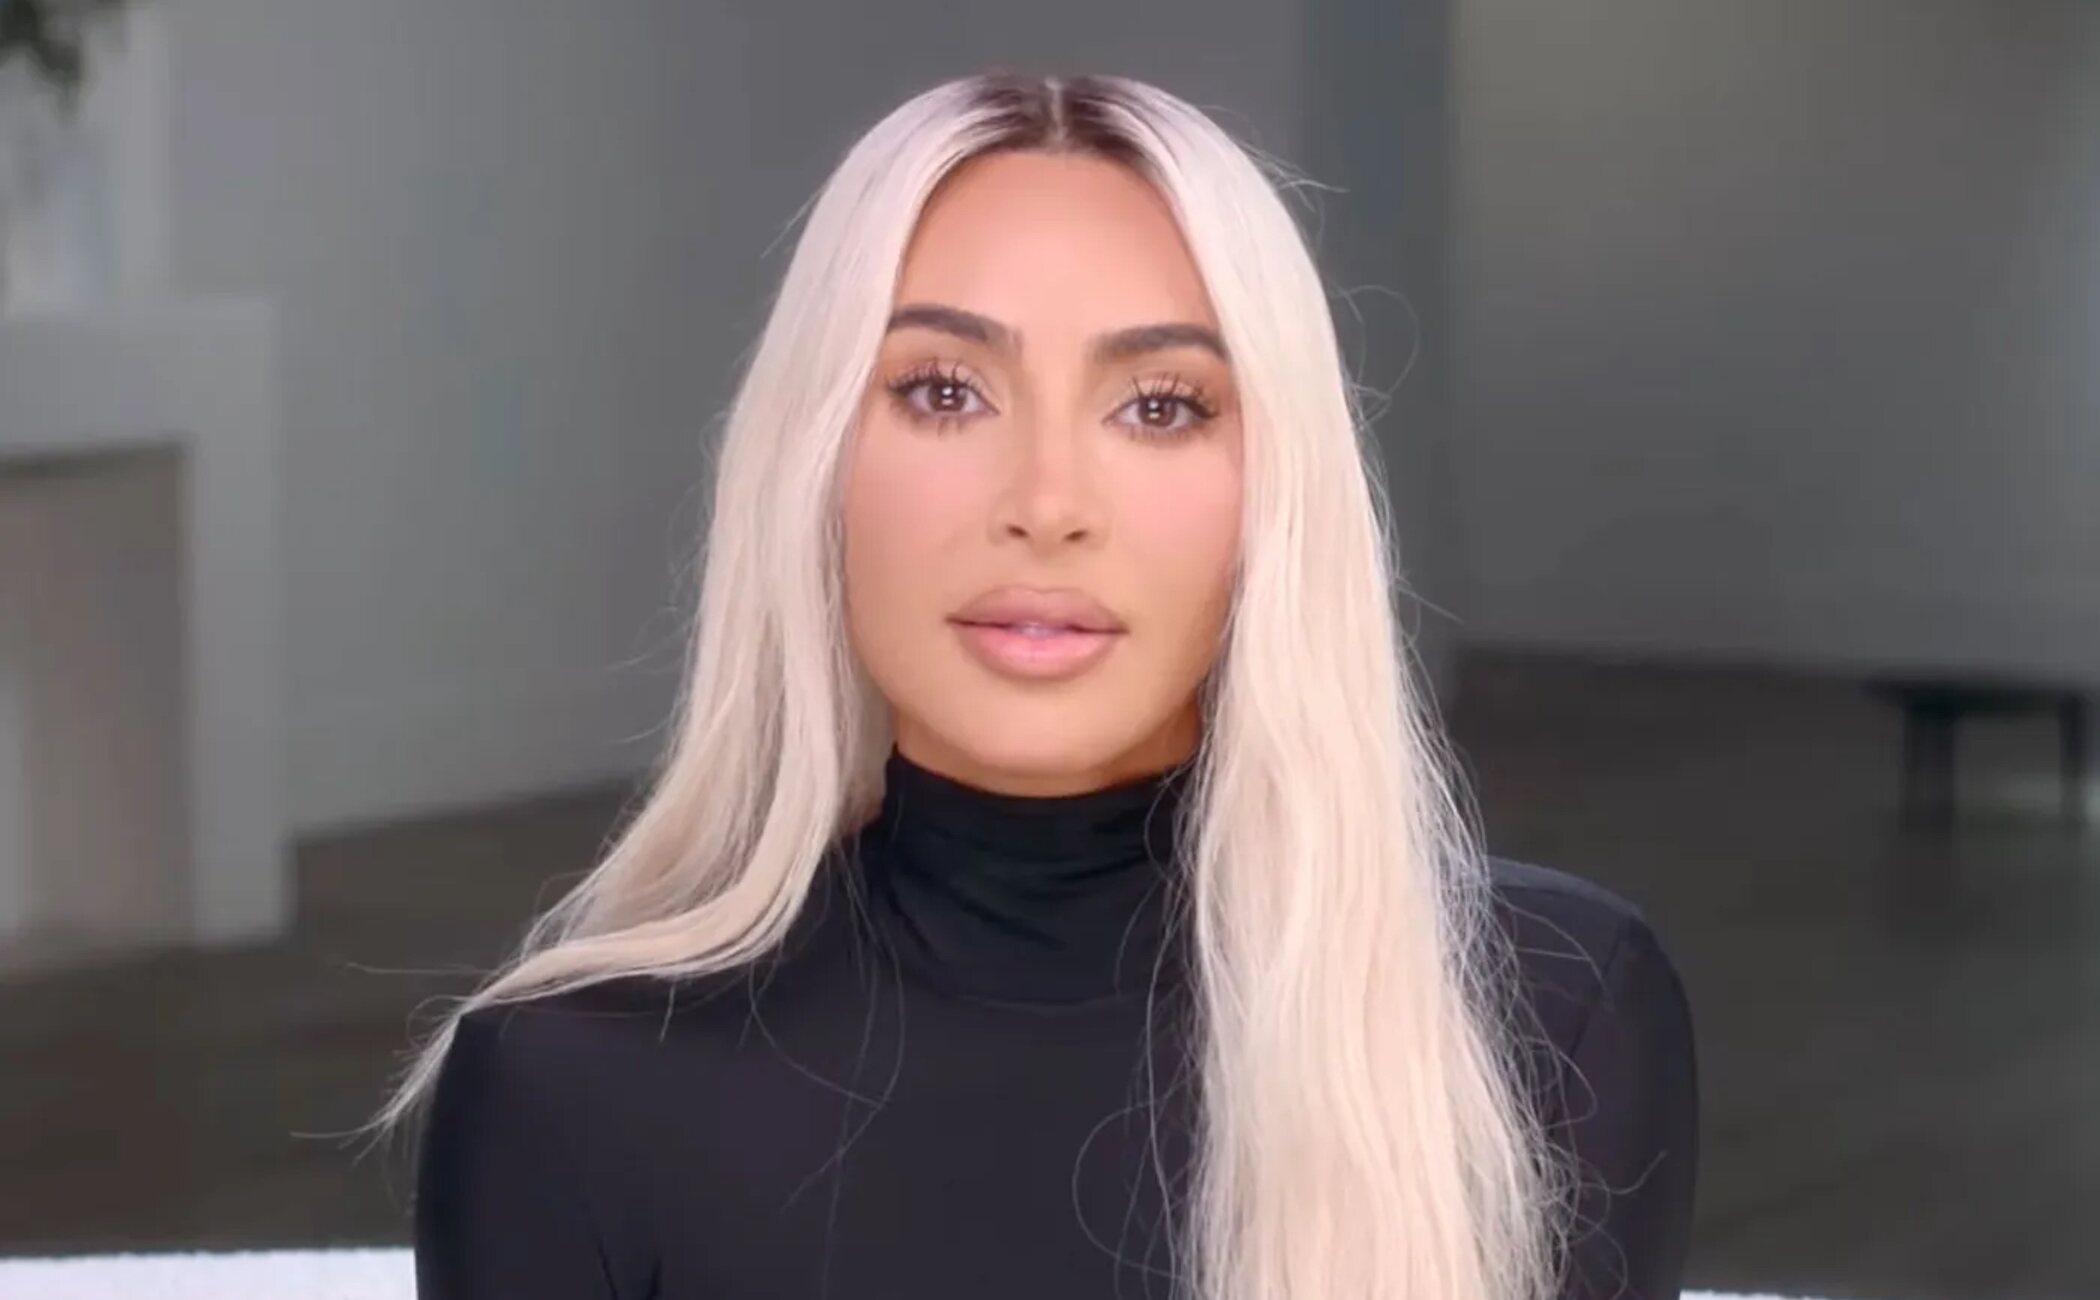 Kim Kardashian relata las consecuencias psicológicas de los ataques públicos de Kanye West tras su divorcio: "Estoy agotada"